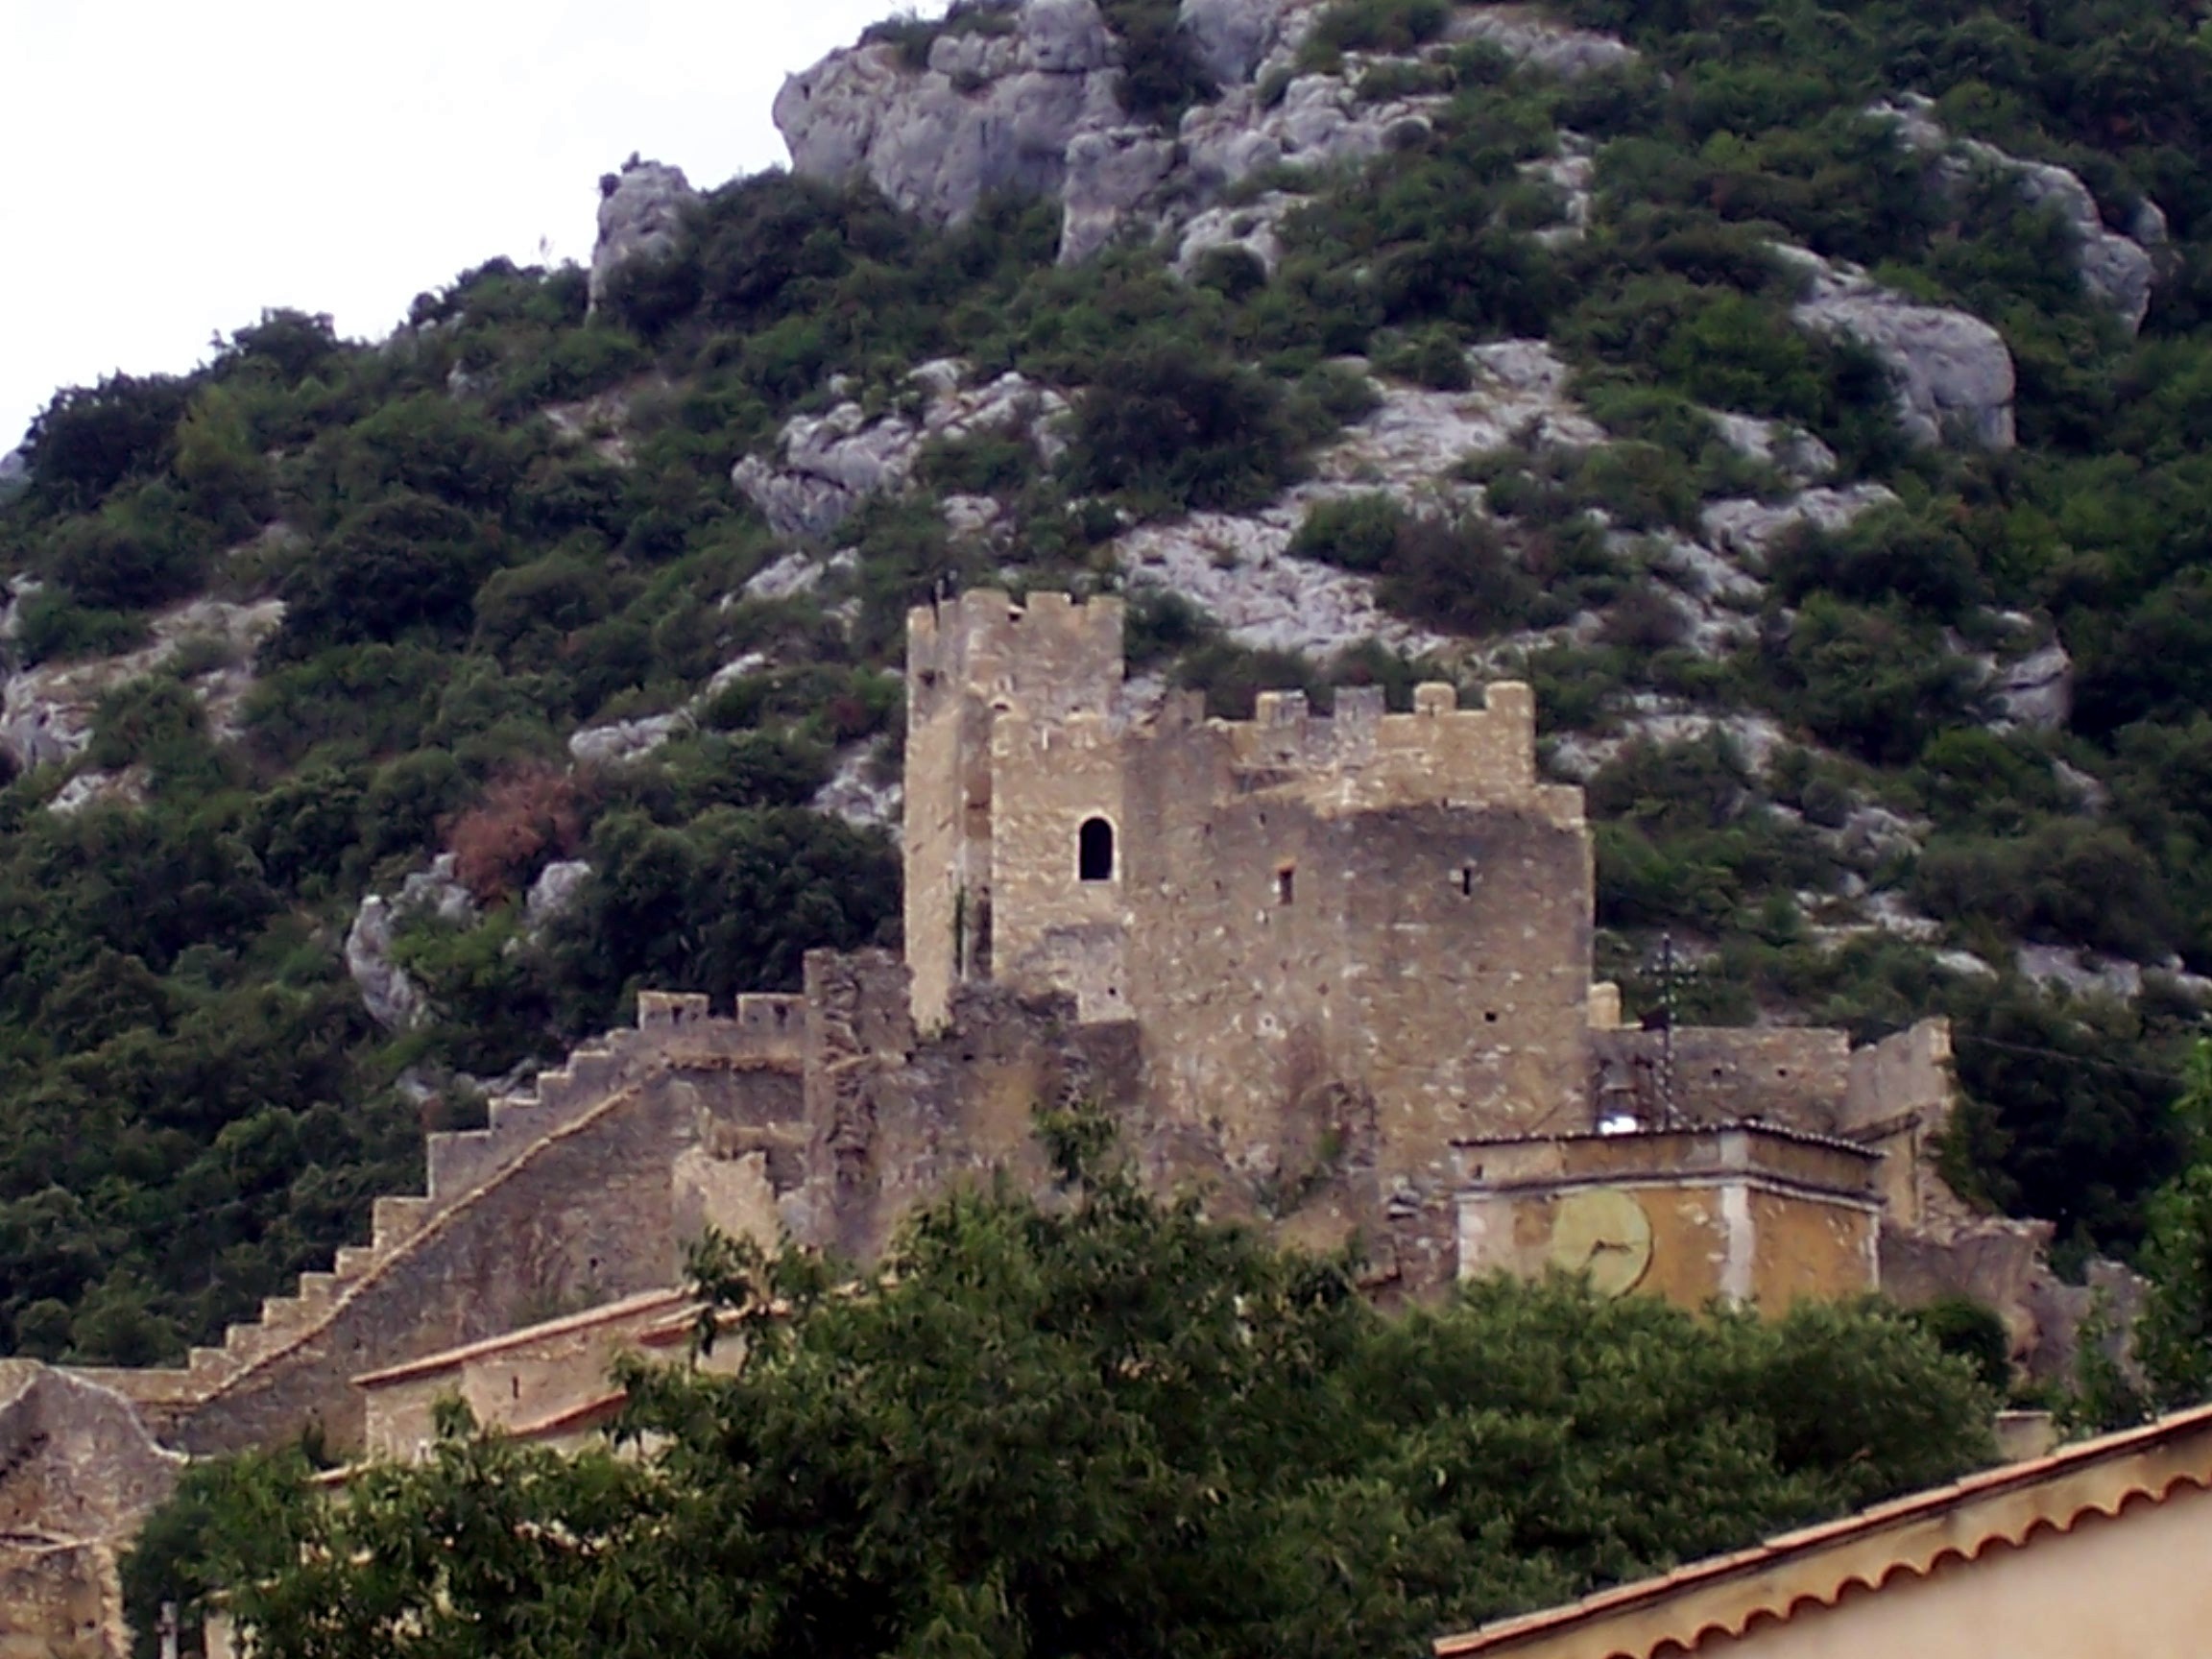 1182-cite-medievale-saint-montan-chateau-ardeche.jpg